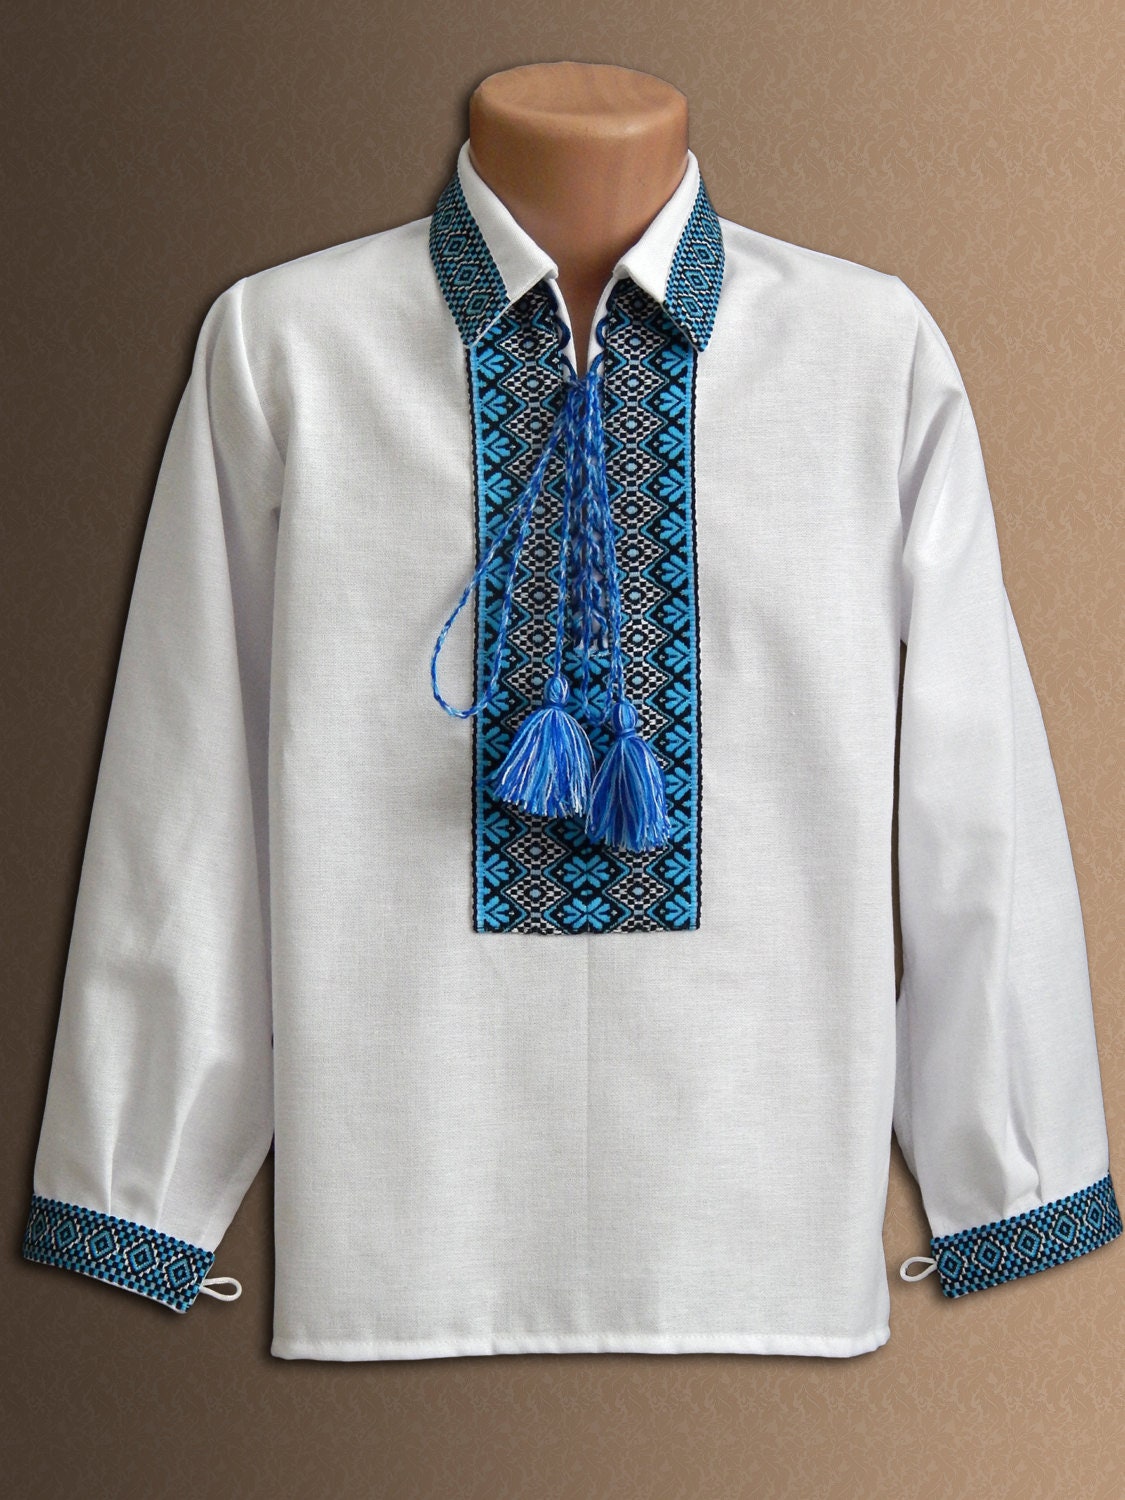 Vyshyvanka Ukrainian embroidered shirt for boys Folk | Etsy